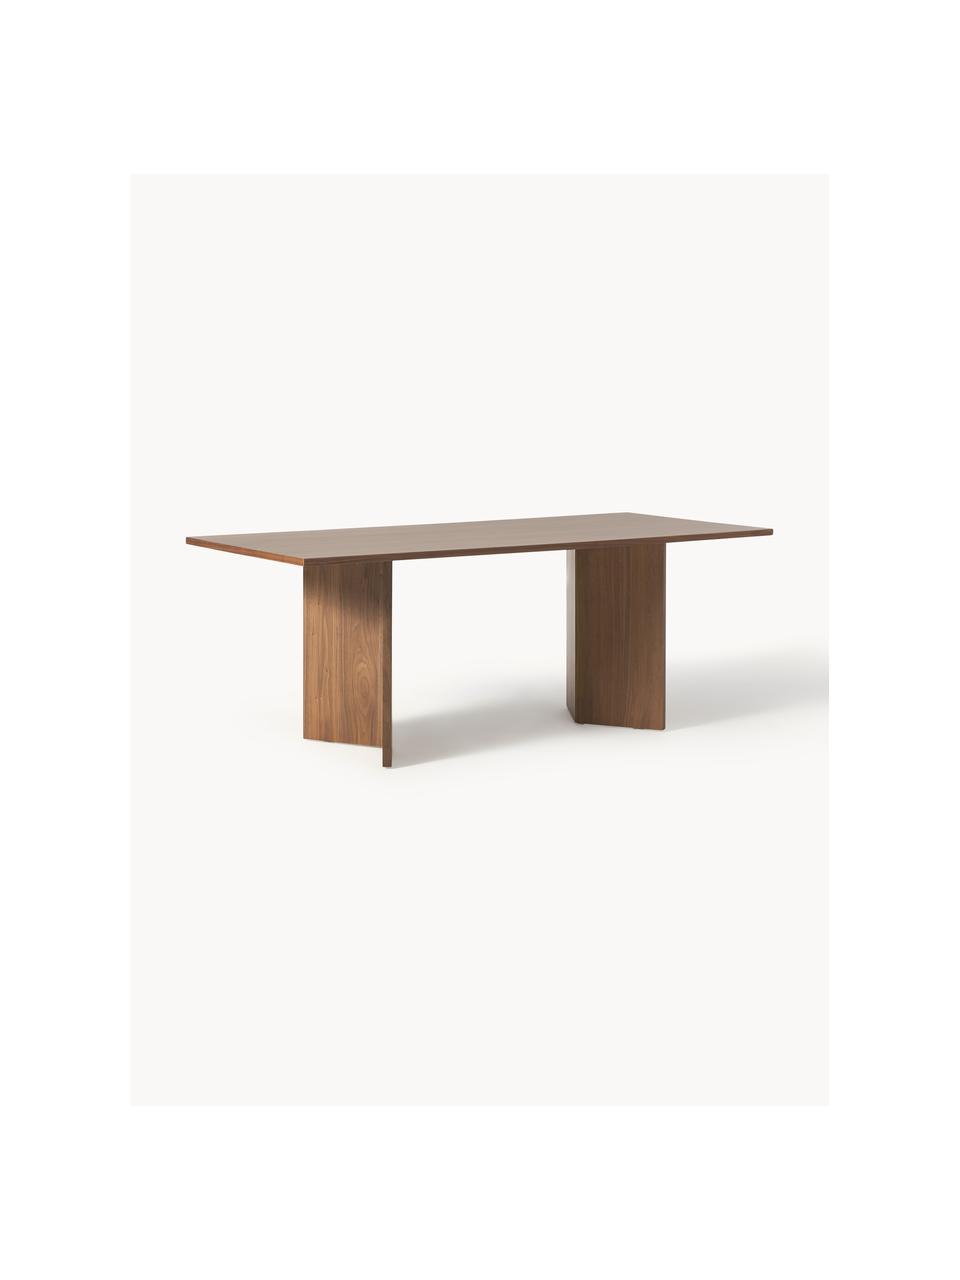 Table en bois Toni, 200 x 90 cm, MDF avec placage en noyer, laqué

Ce produit est fabriqué à partir de bois certifié FSC® issu d'une exploitation durable, Bois de noyer, Ø 200 x haut. 90 cm